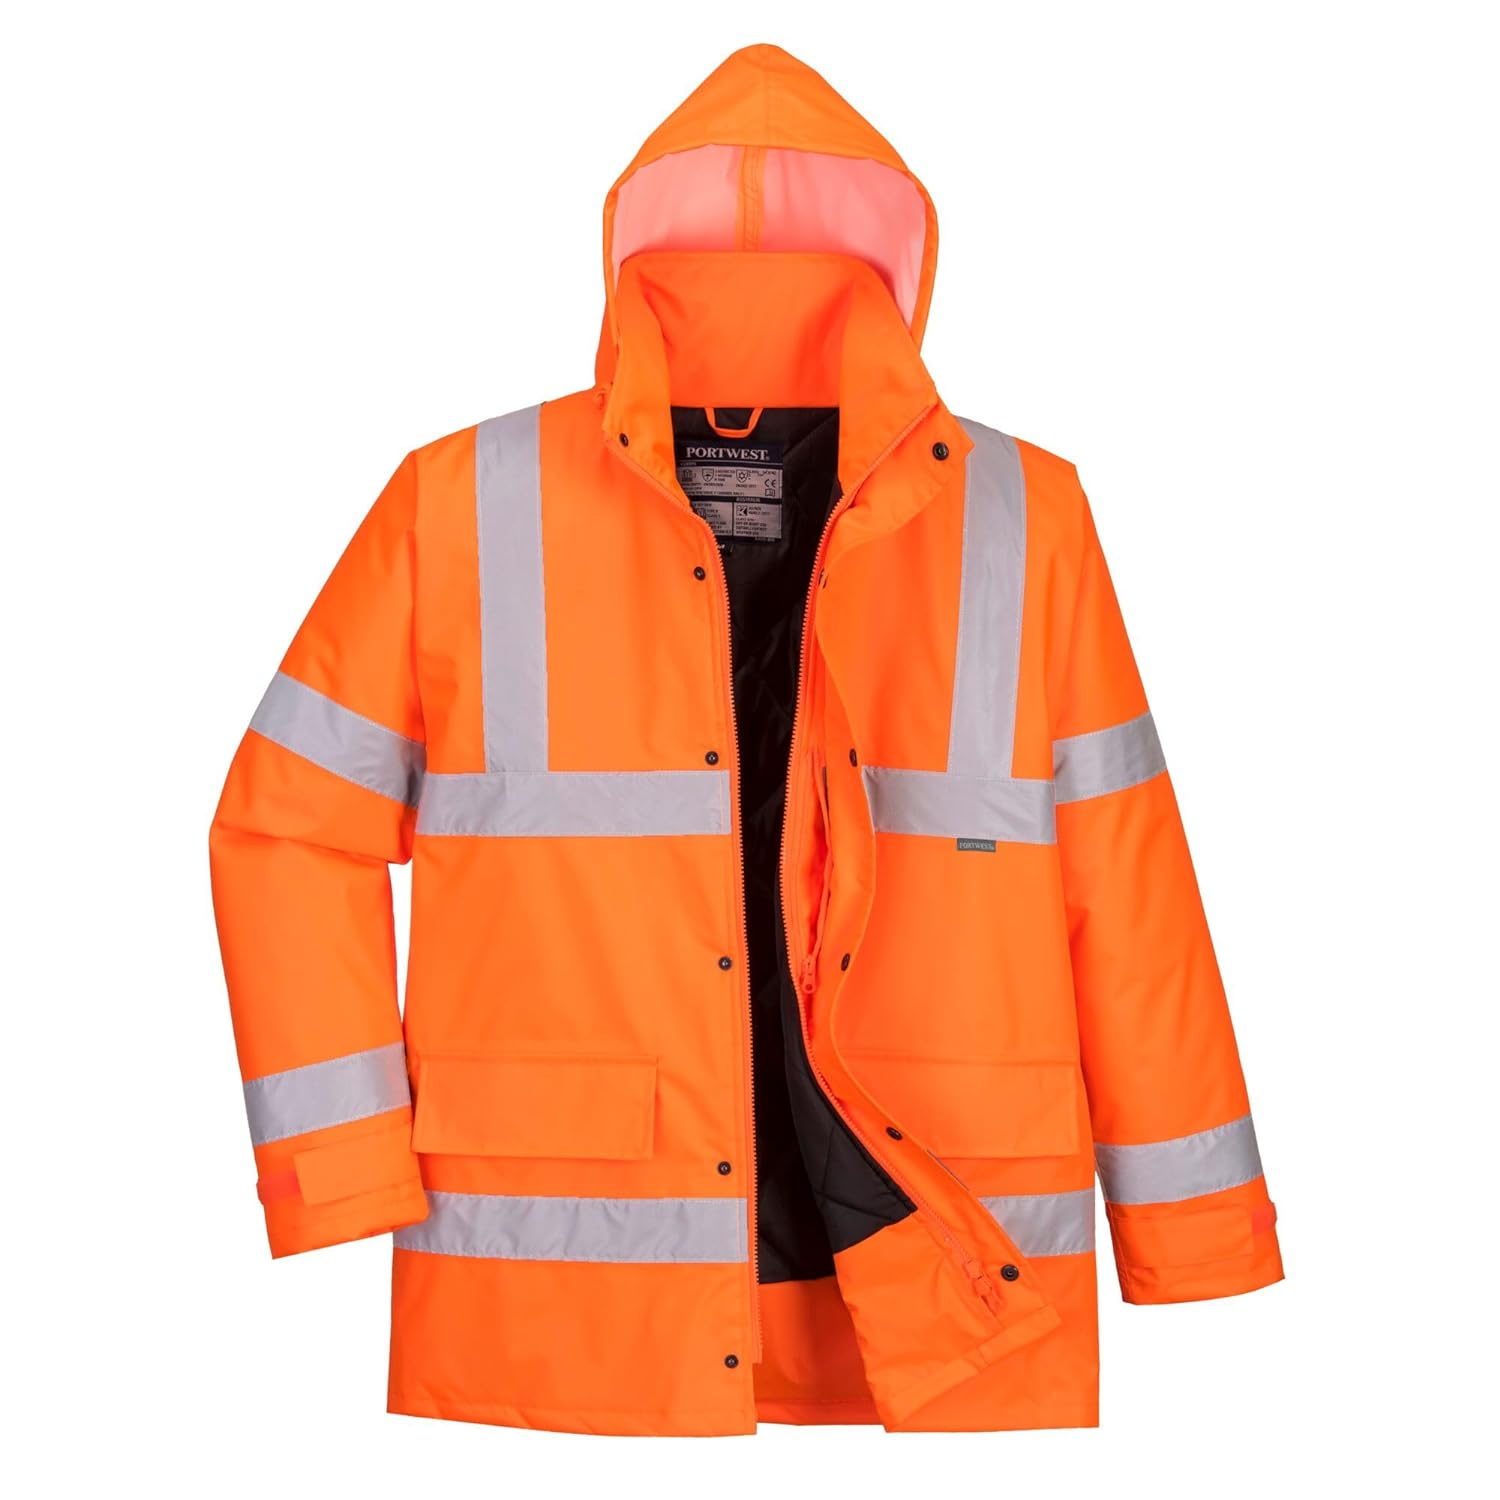 Portwest S460 Hi-Vis Winter Traffic Jacket Orange